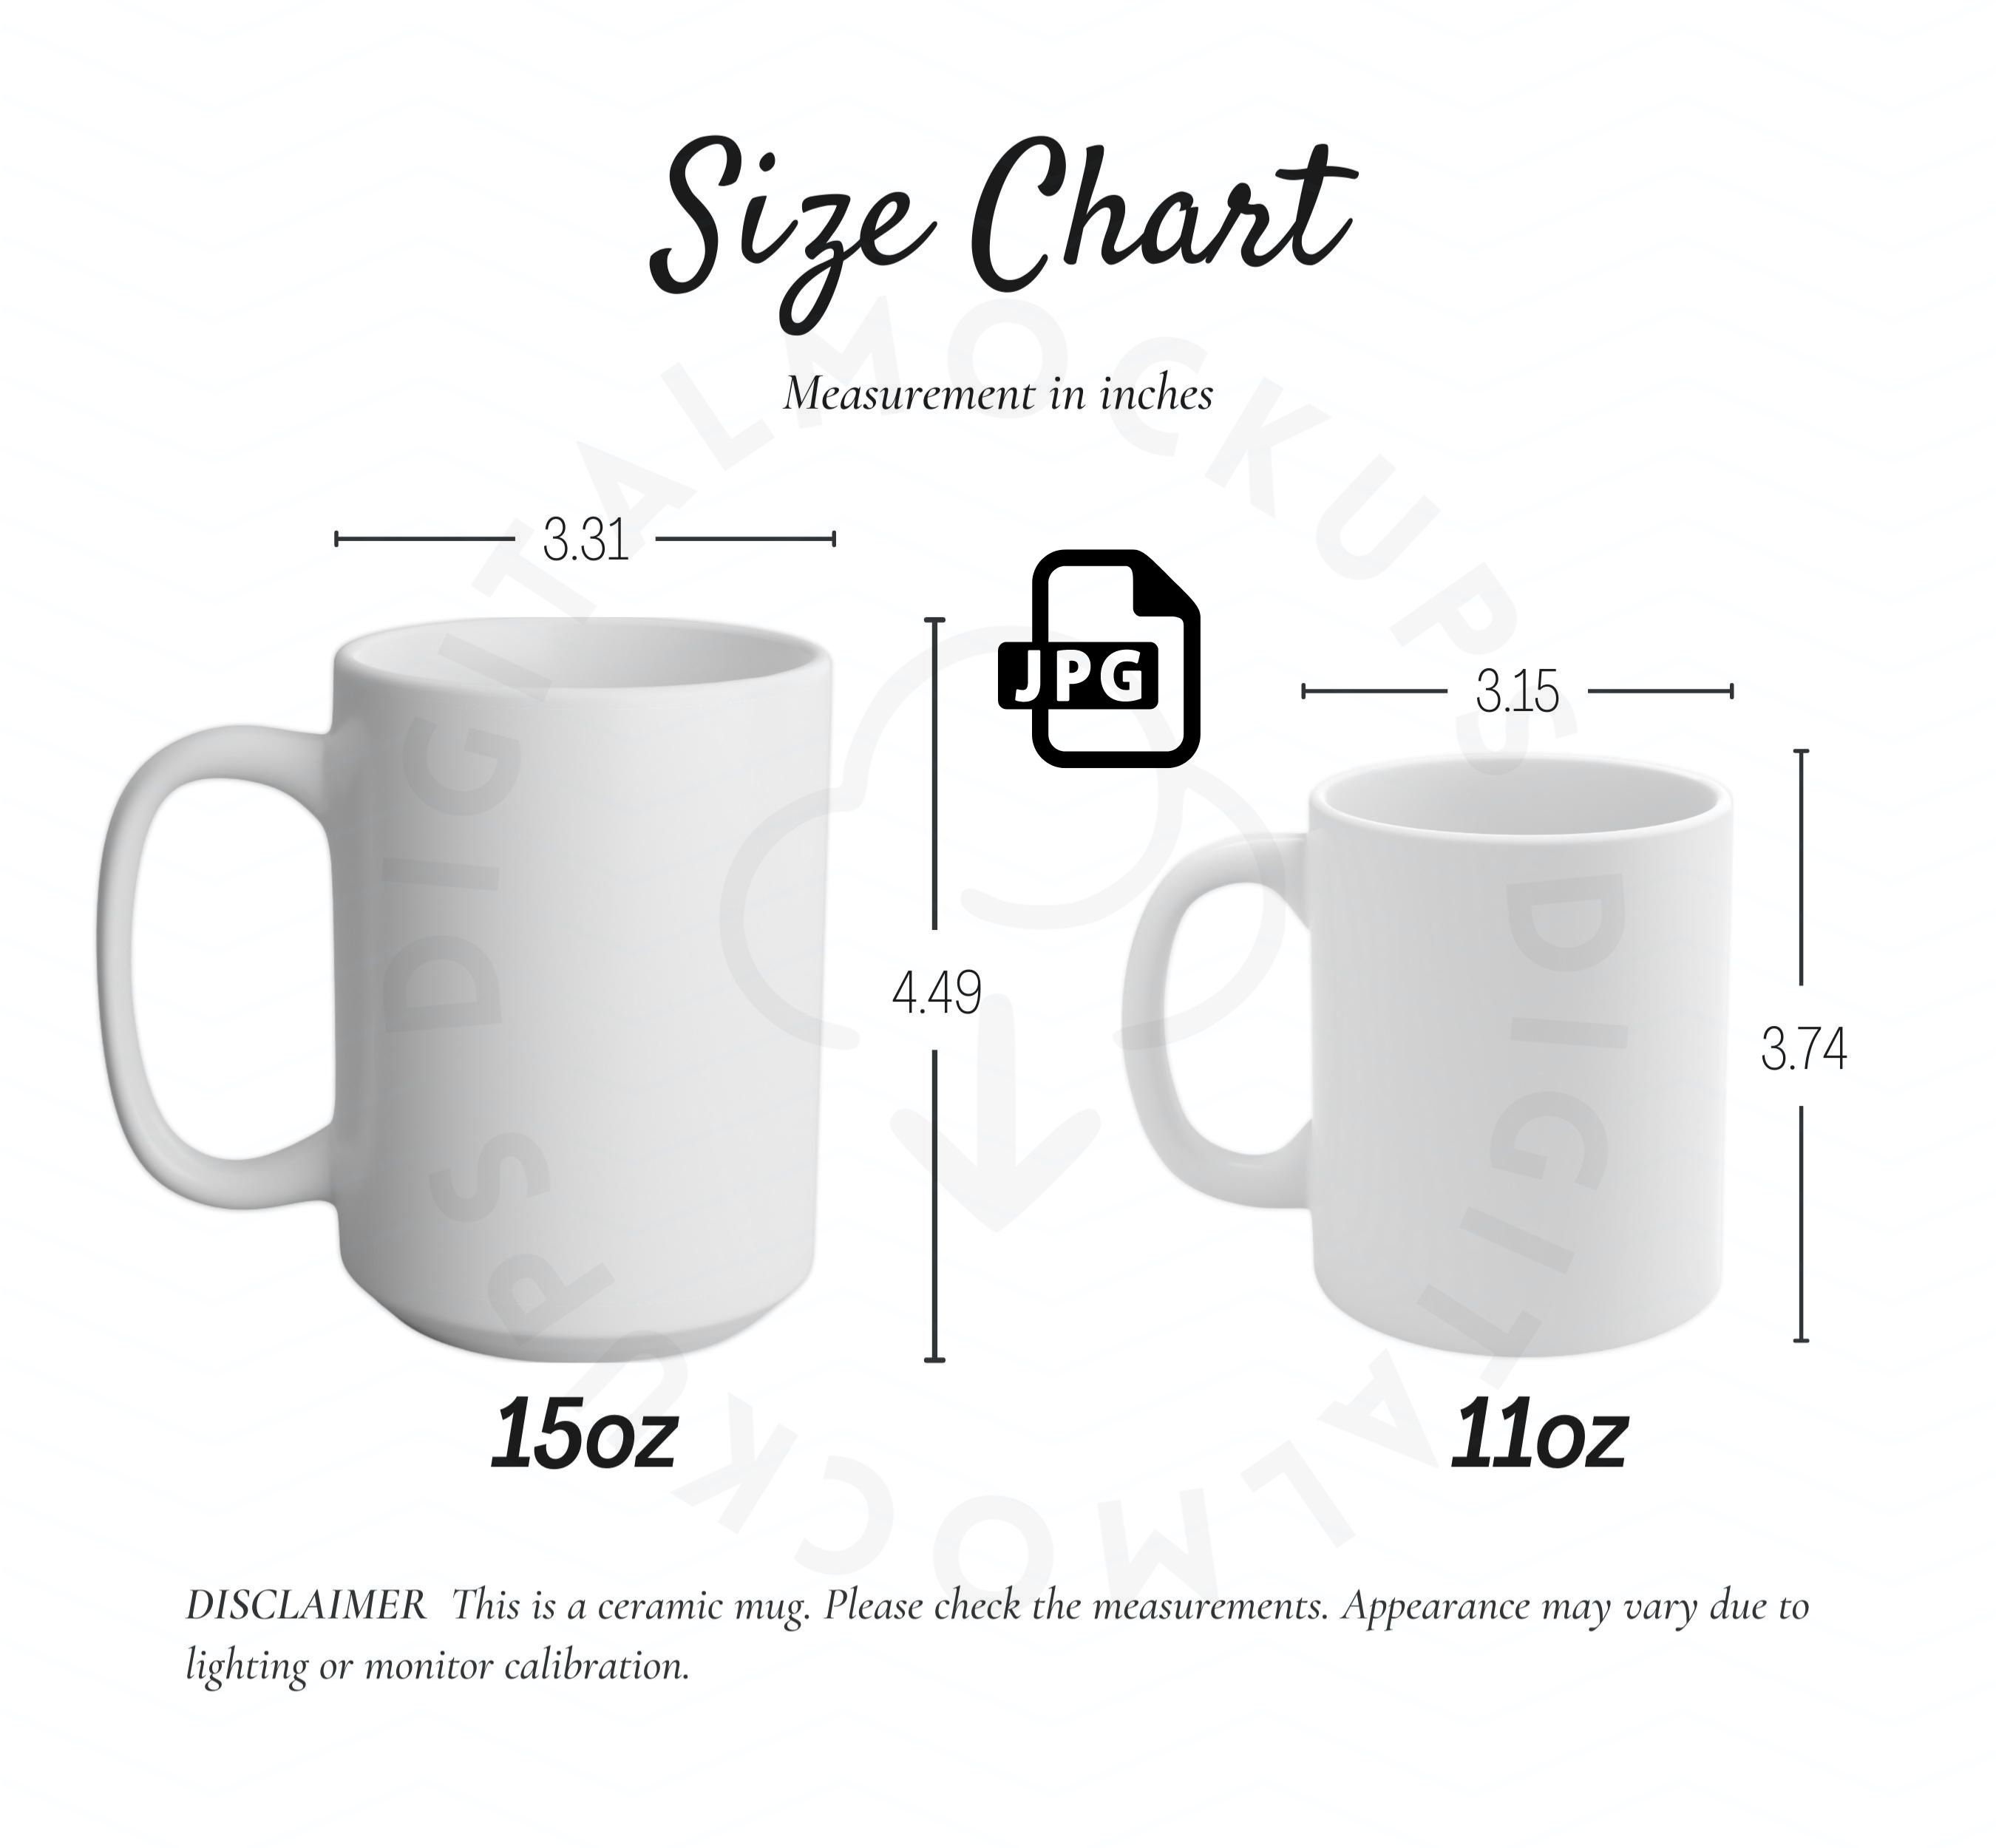 Mug Size Chart-cup Size Chart-mug Mockup-11oz-15oz-mug Size - Etsy Canada